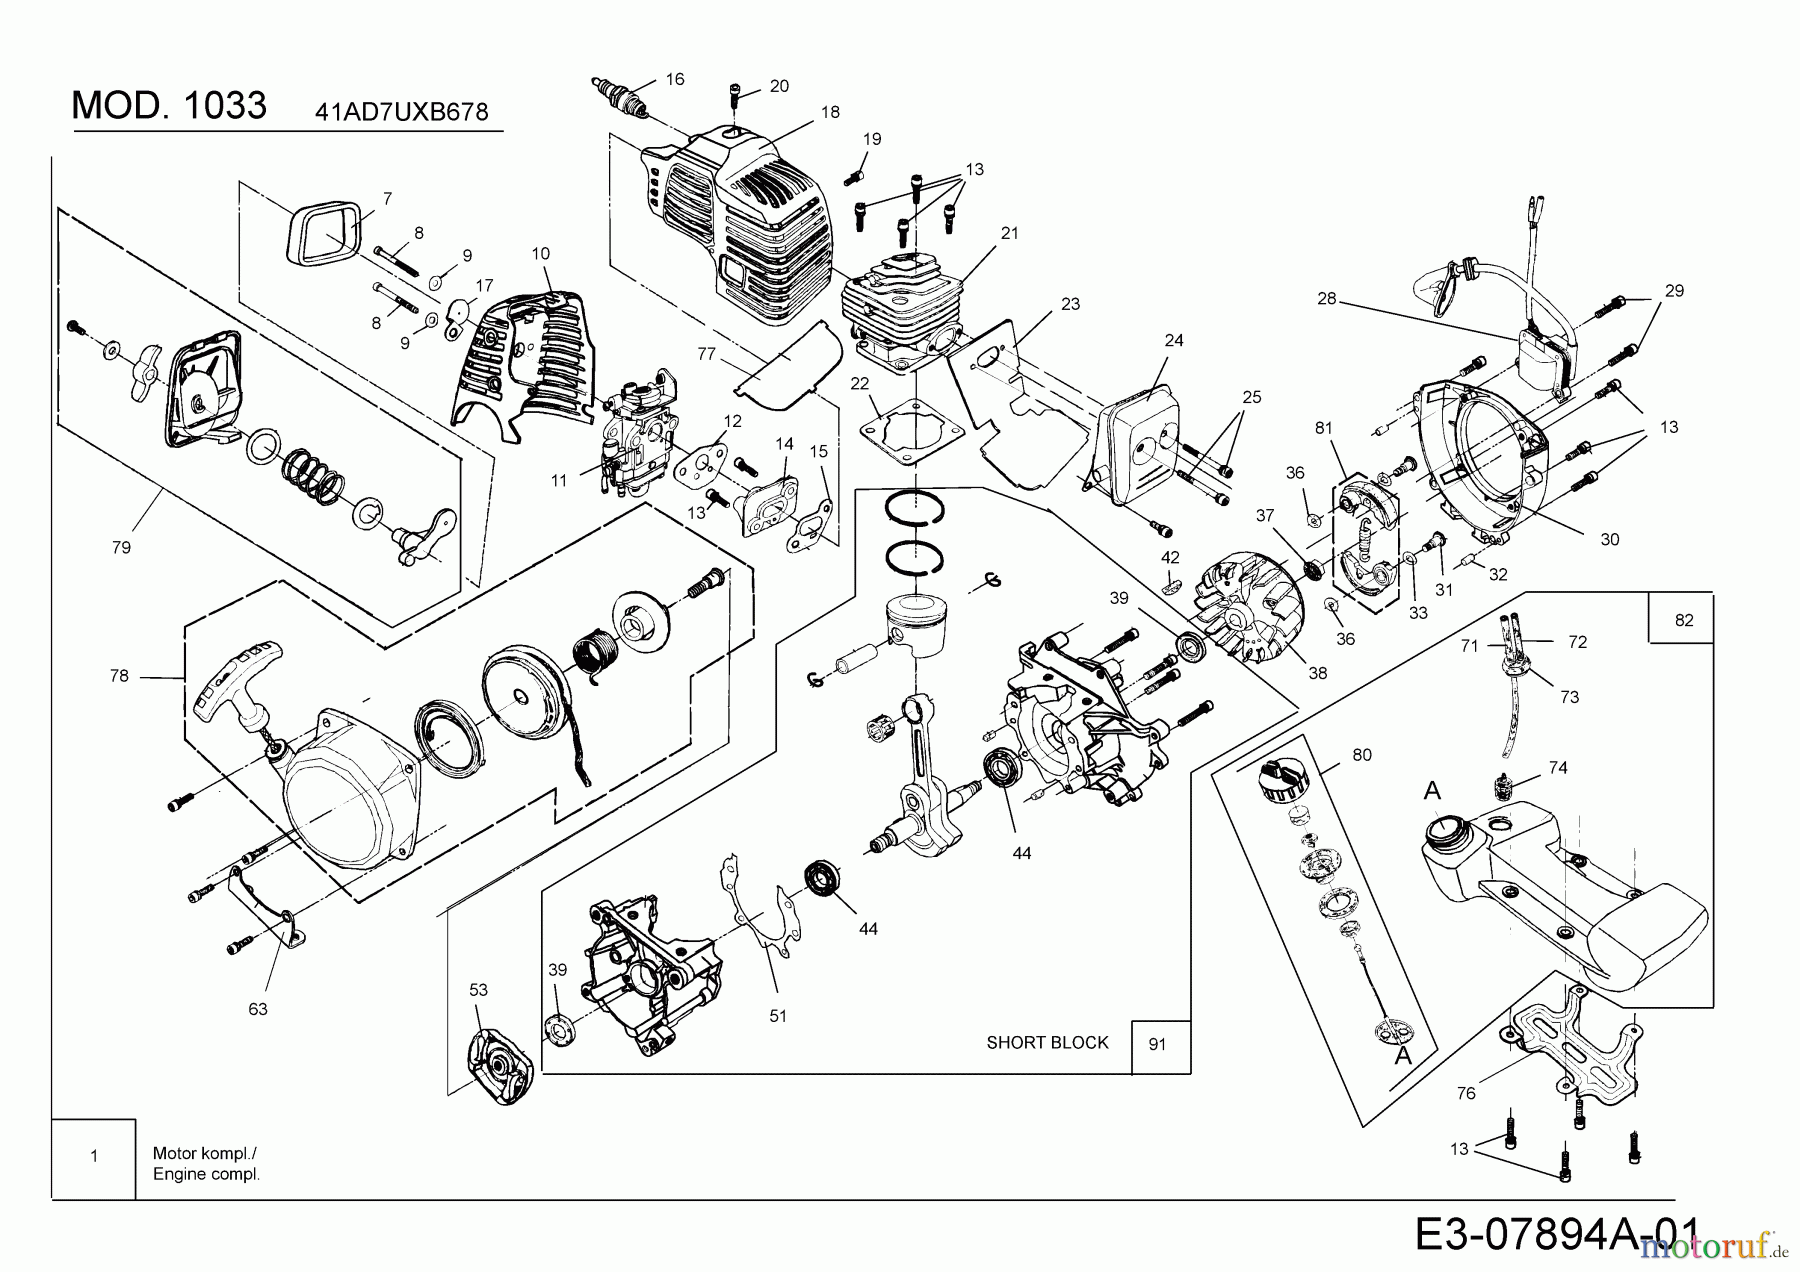  MTD Motorsensen 1033 41AD7UXB678  (2018) Motor